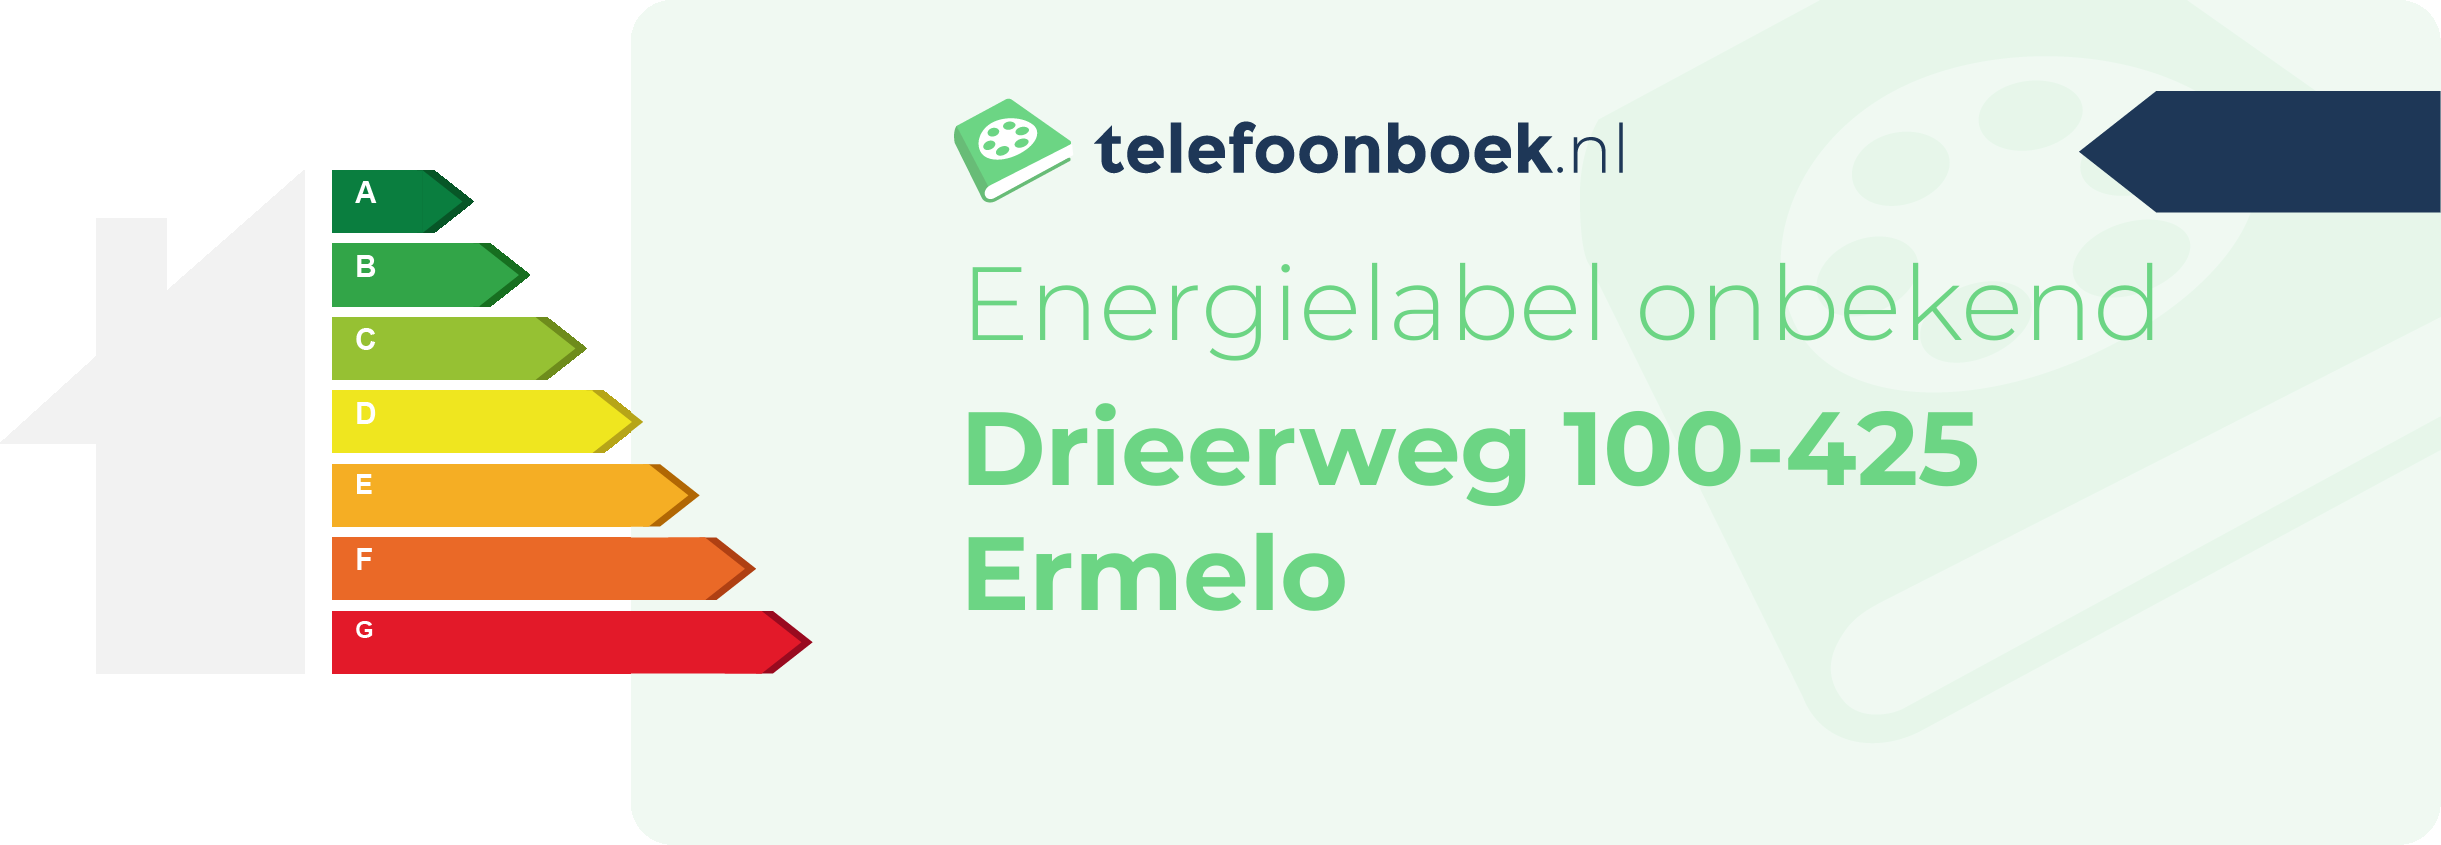 Energielabel Drieerweg 100-425 Ermelo